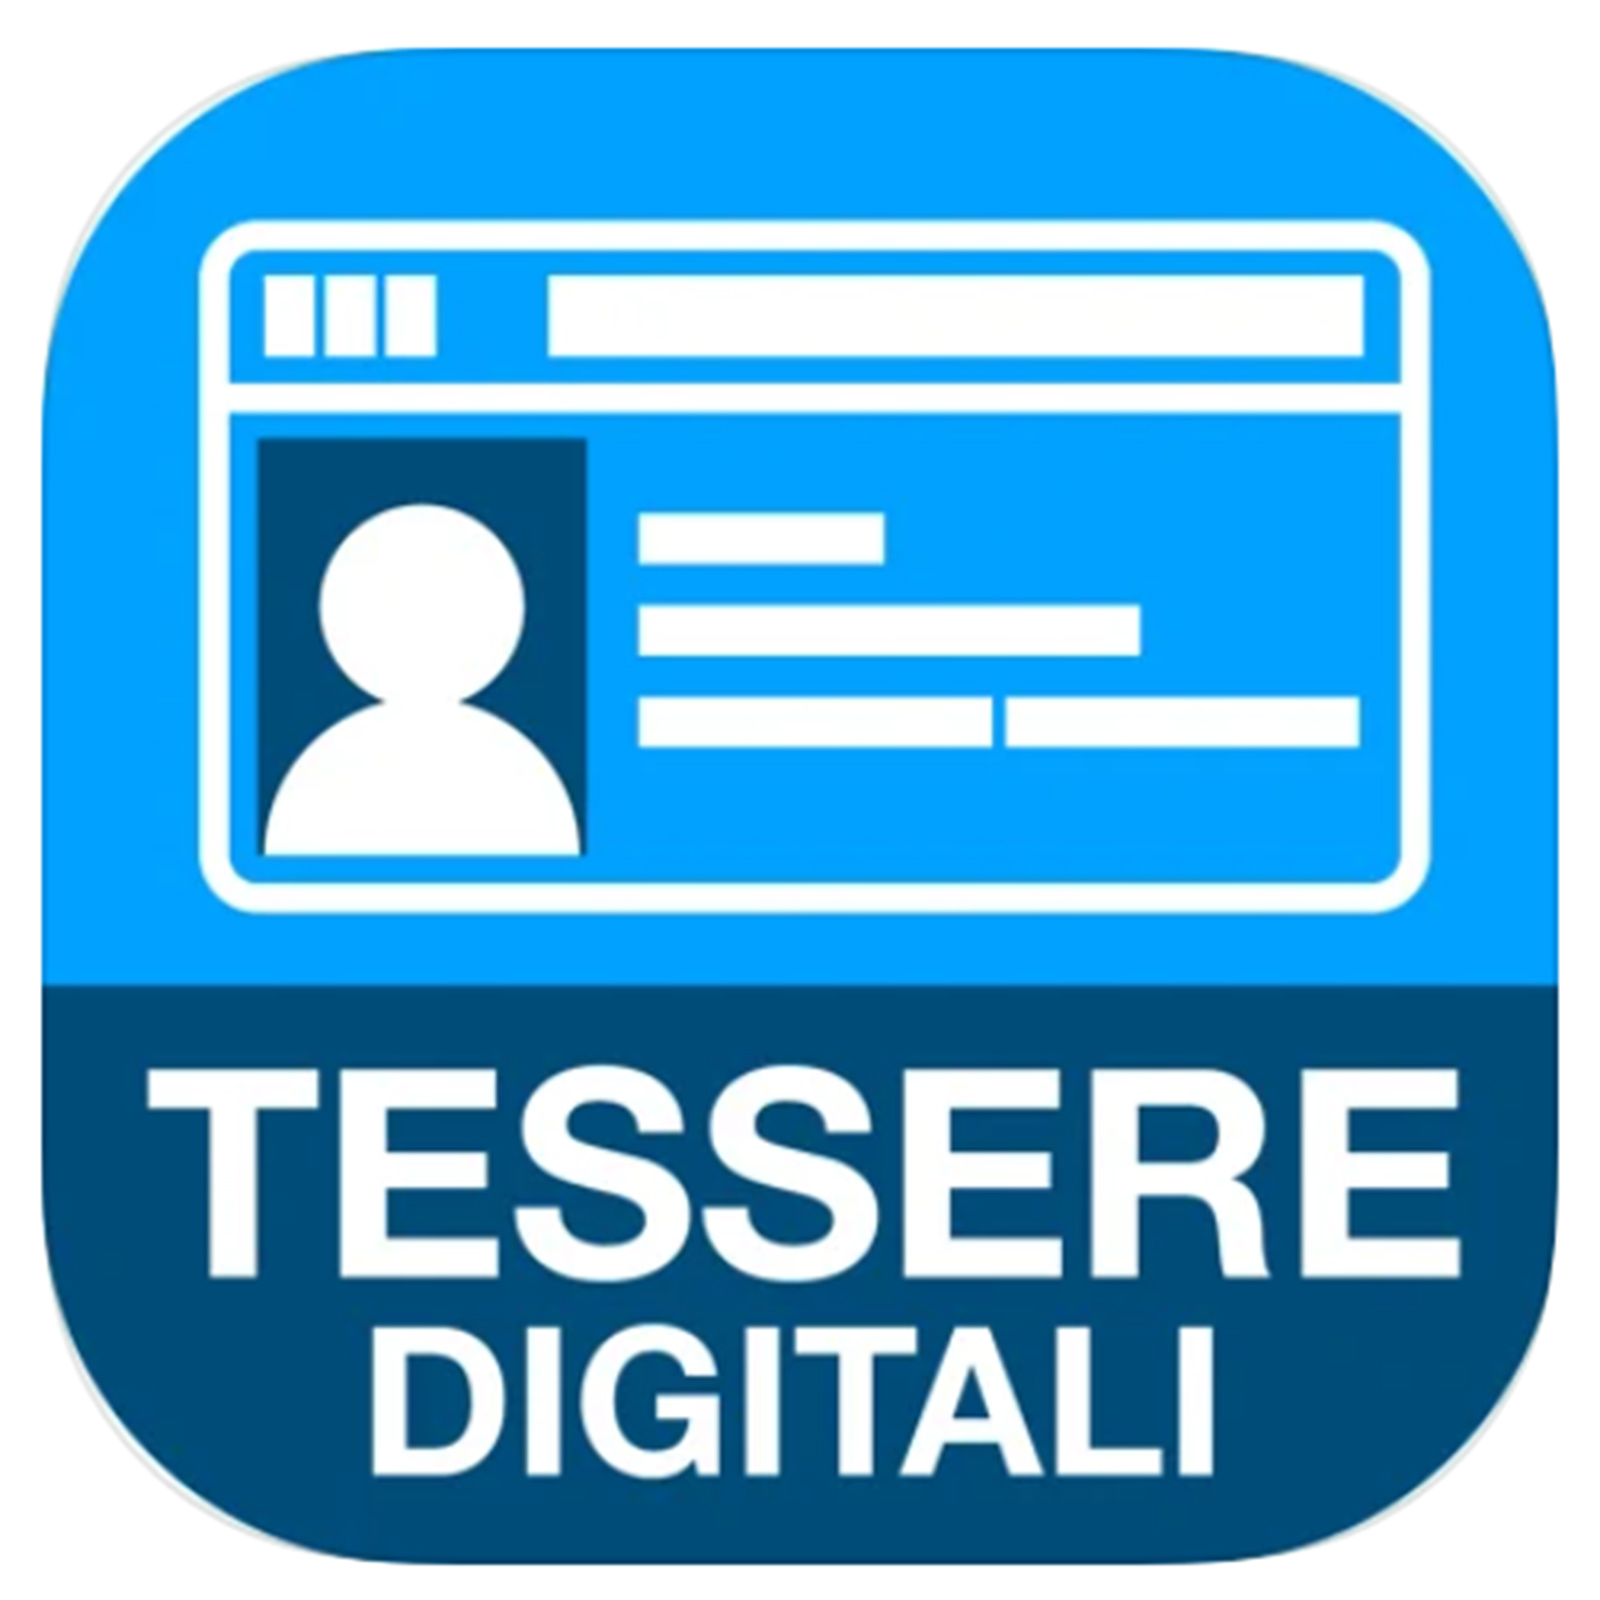 Le Tessere in formato digitale con l’app “Tessere Digitali”